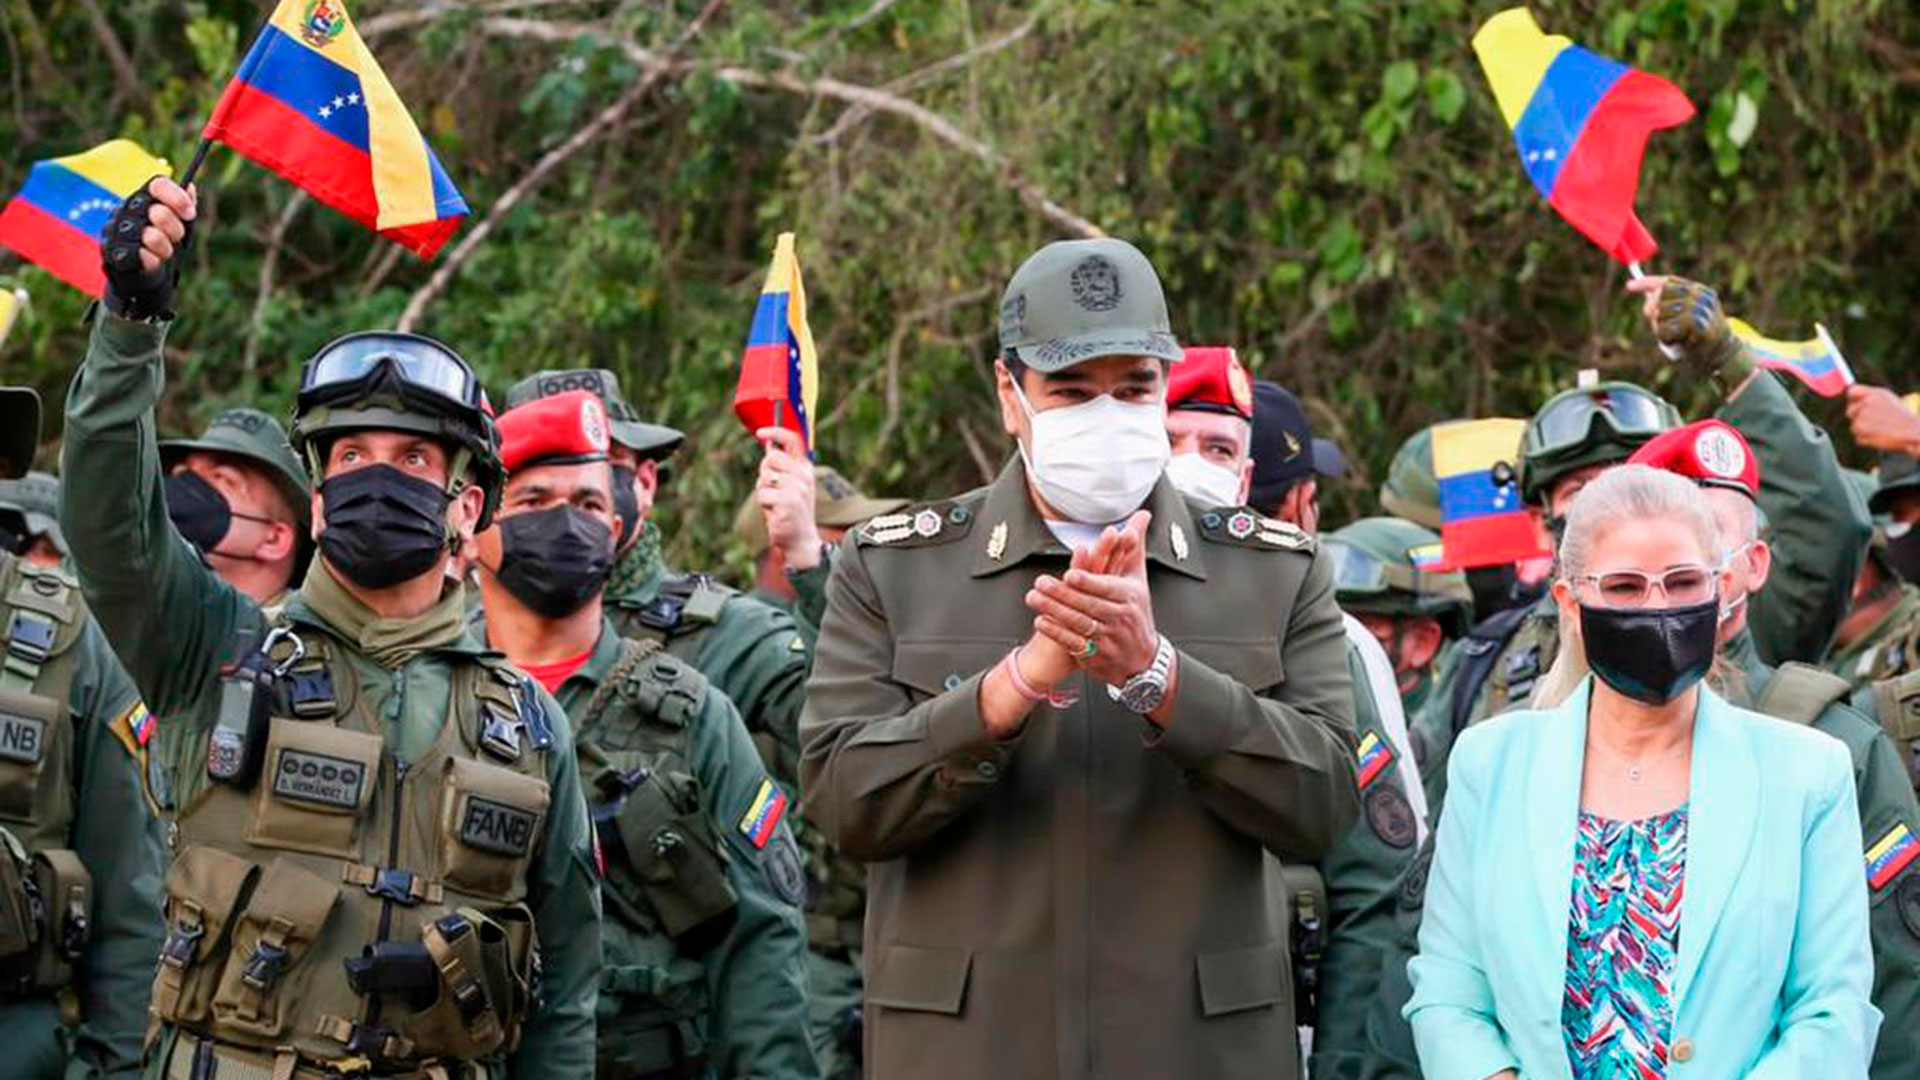 Nicolás Maduro en un acto vistiendo uniforme militar